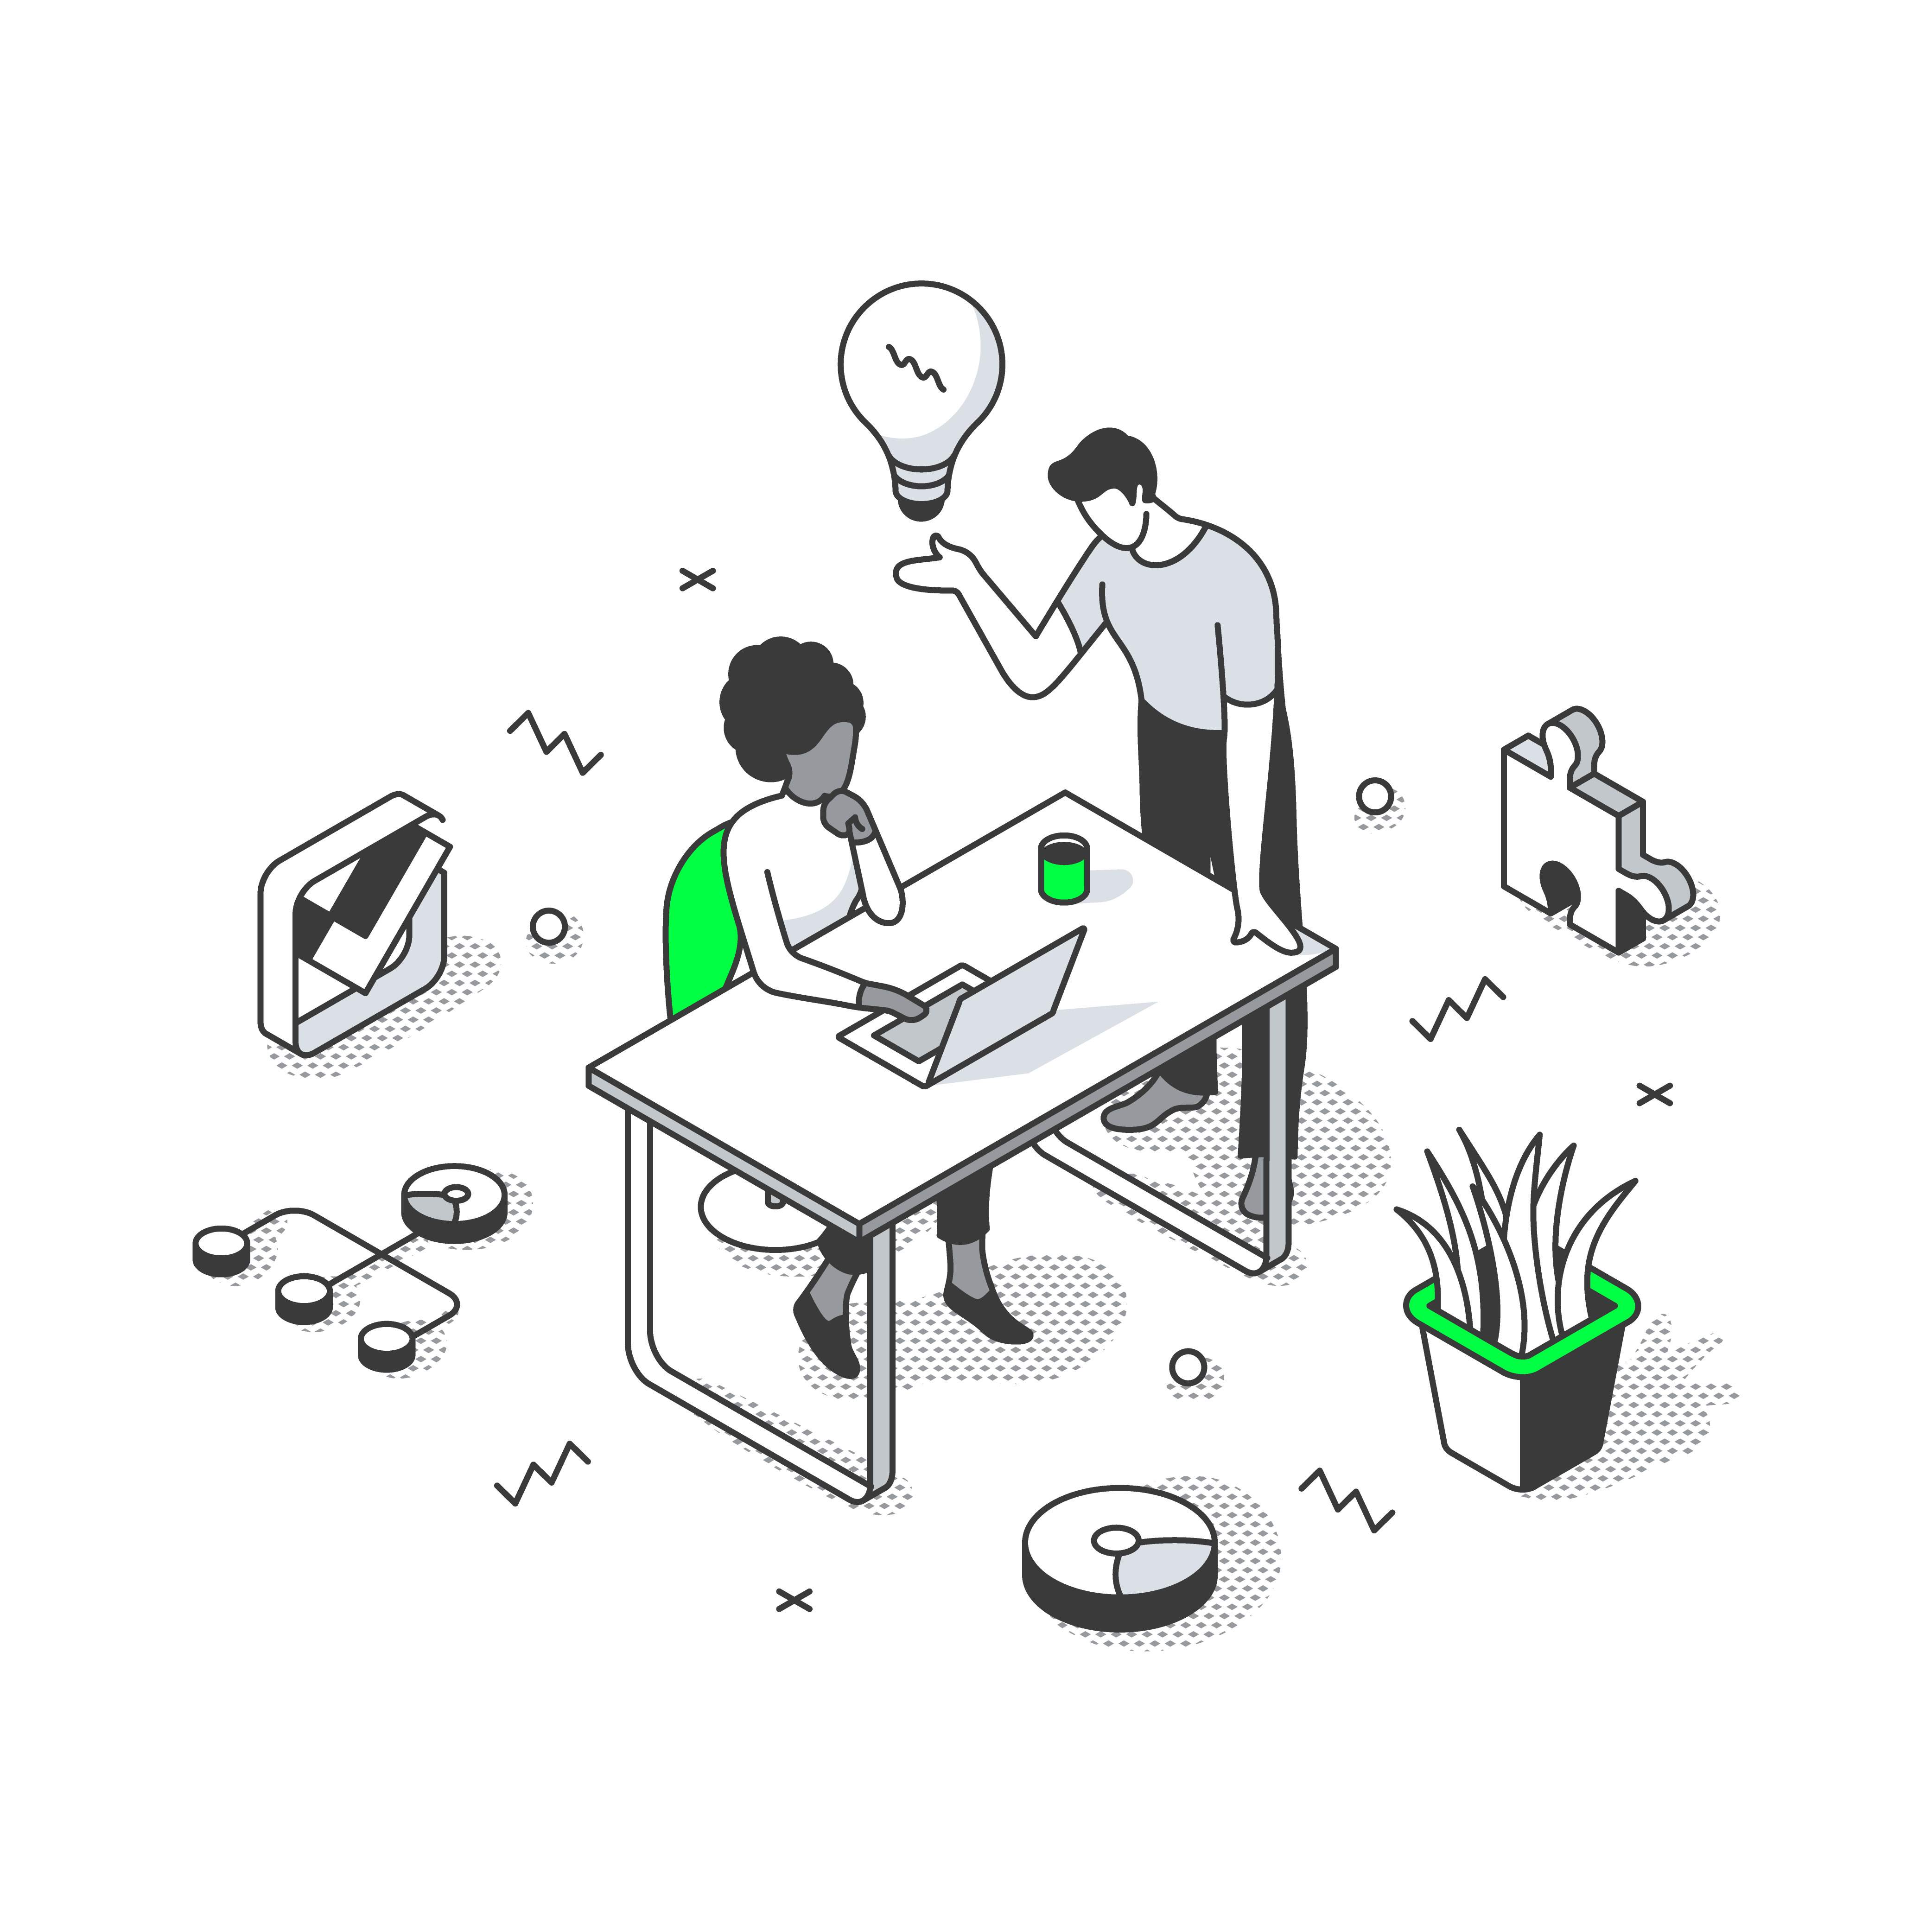 二人の人物がデジタル作業環境で協力する様子を描いた等角投影イラスト。机上で一人がラップトップを操作し、もう一人がアイデアの電球を提示している。